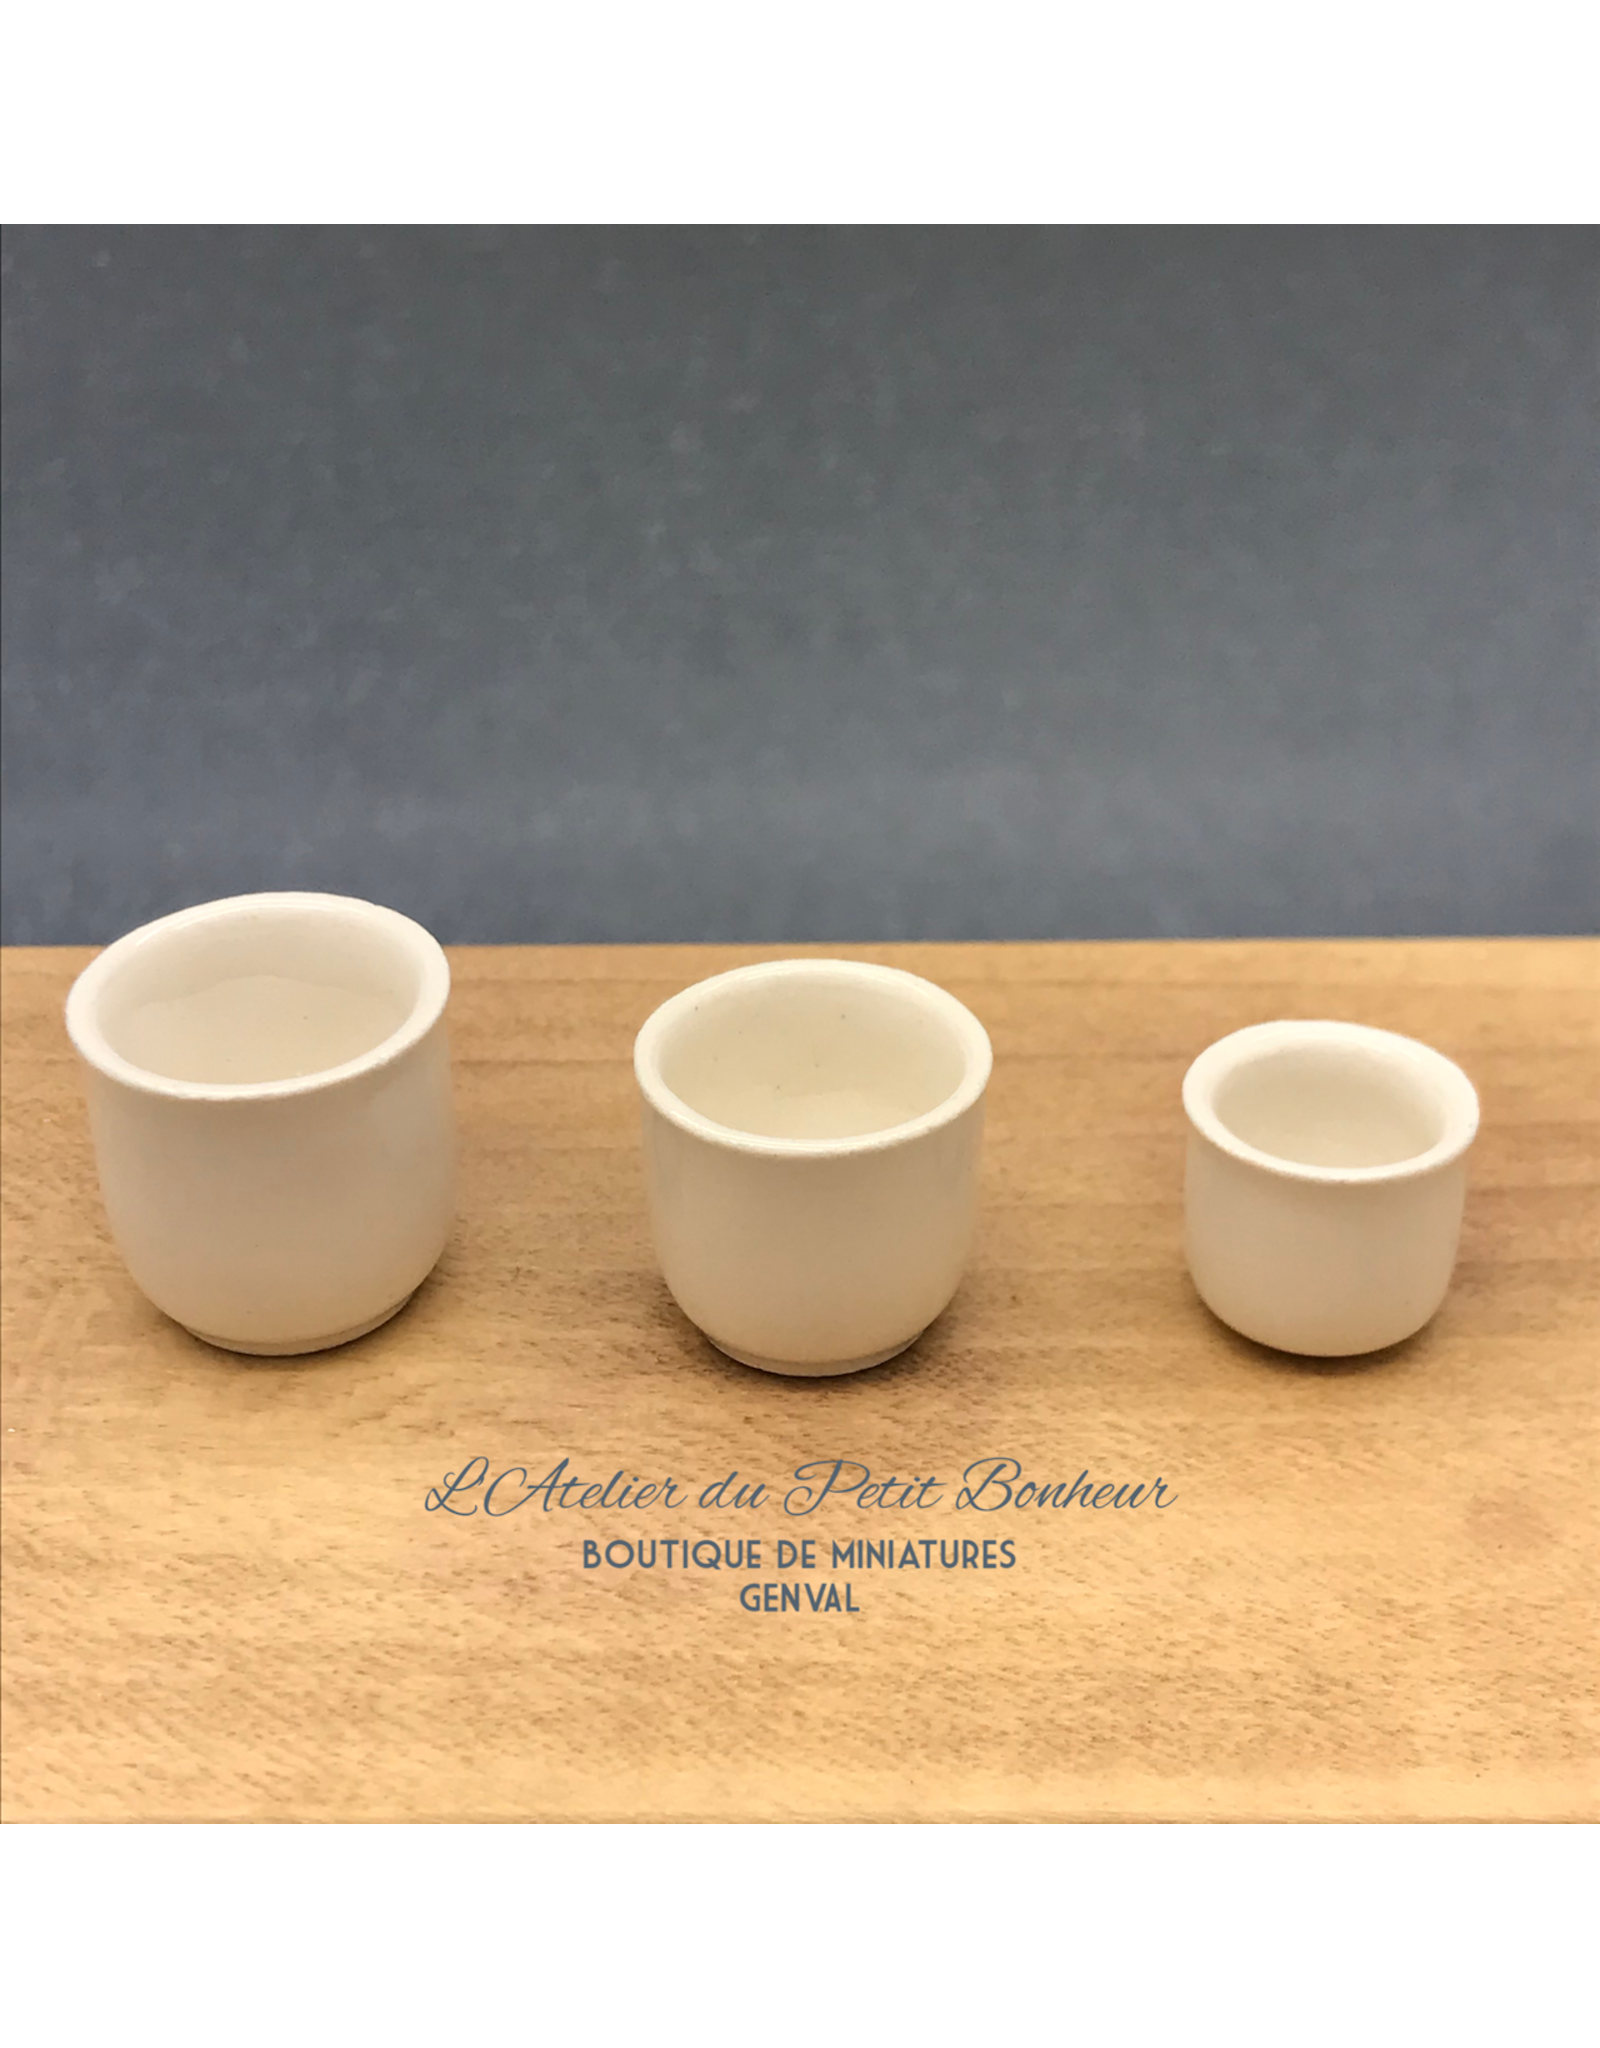 CP Prestige Ceramics (UK) Cache-pot blanc (Grand) miniature 1:12